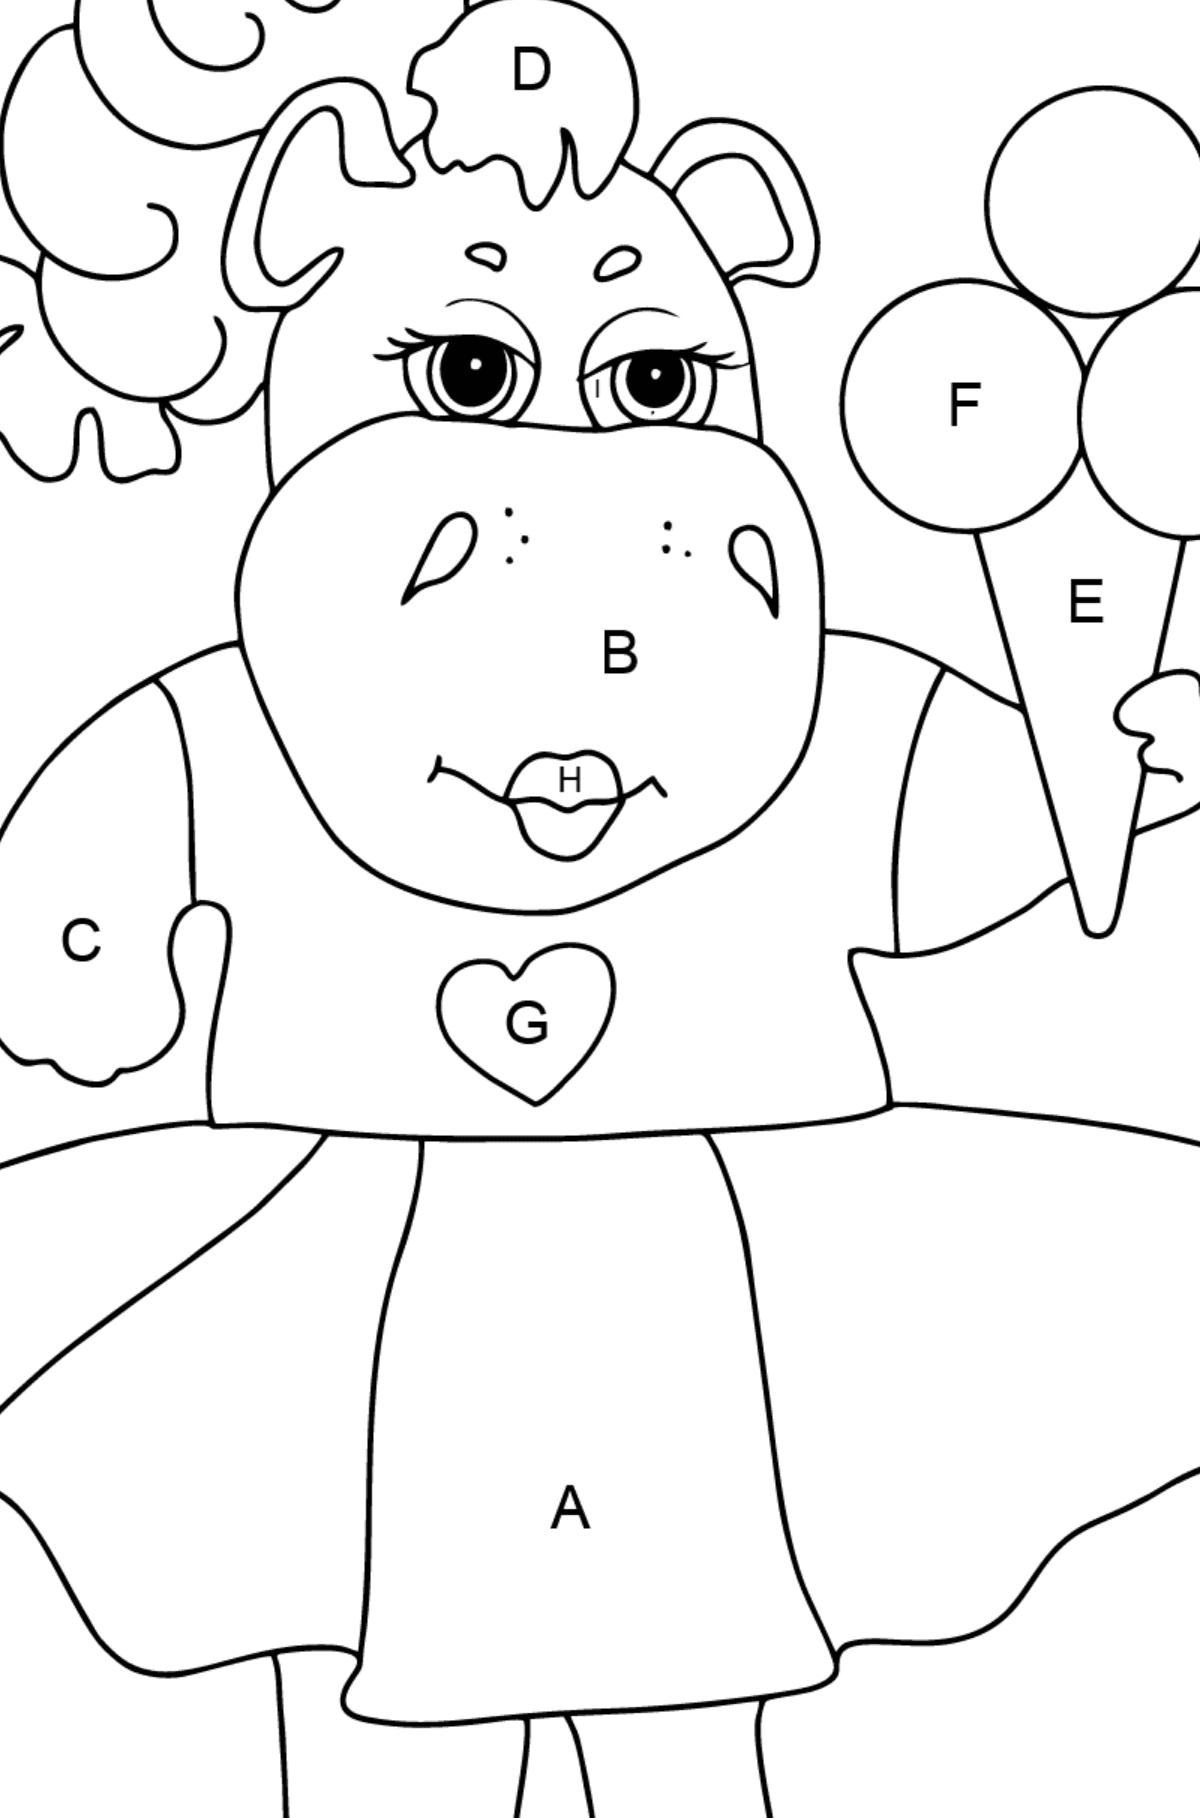 Dibujo de adorable hipopótamo (simple) para colorear - Colorear por Letras para Niños